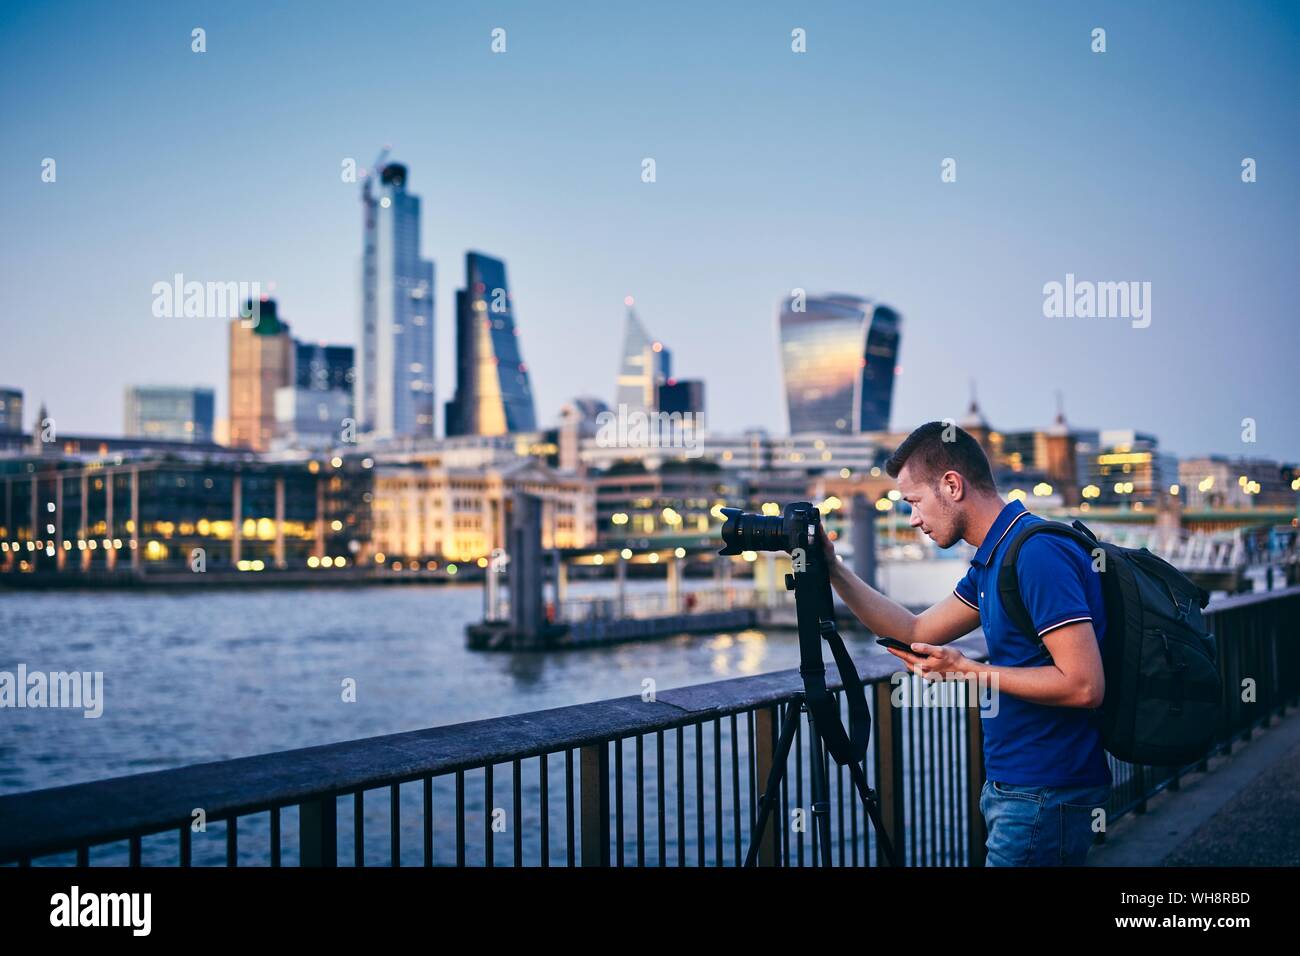 Jeune homme photographié avec trépied sur le quai à l'horizon urbain. Photographe holding smart phone avec l'app. La ville de London, United Kingdo Banque D'Images